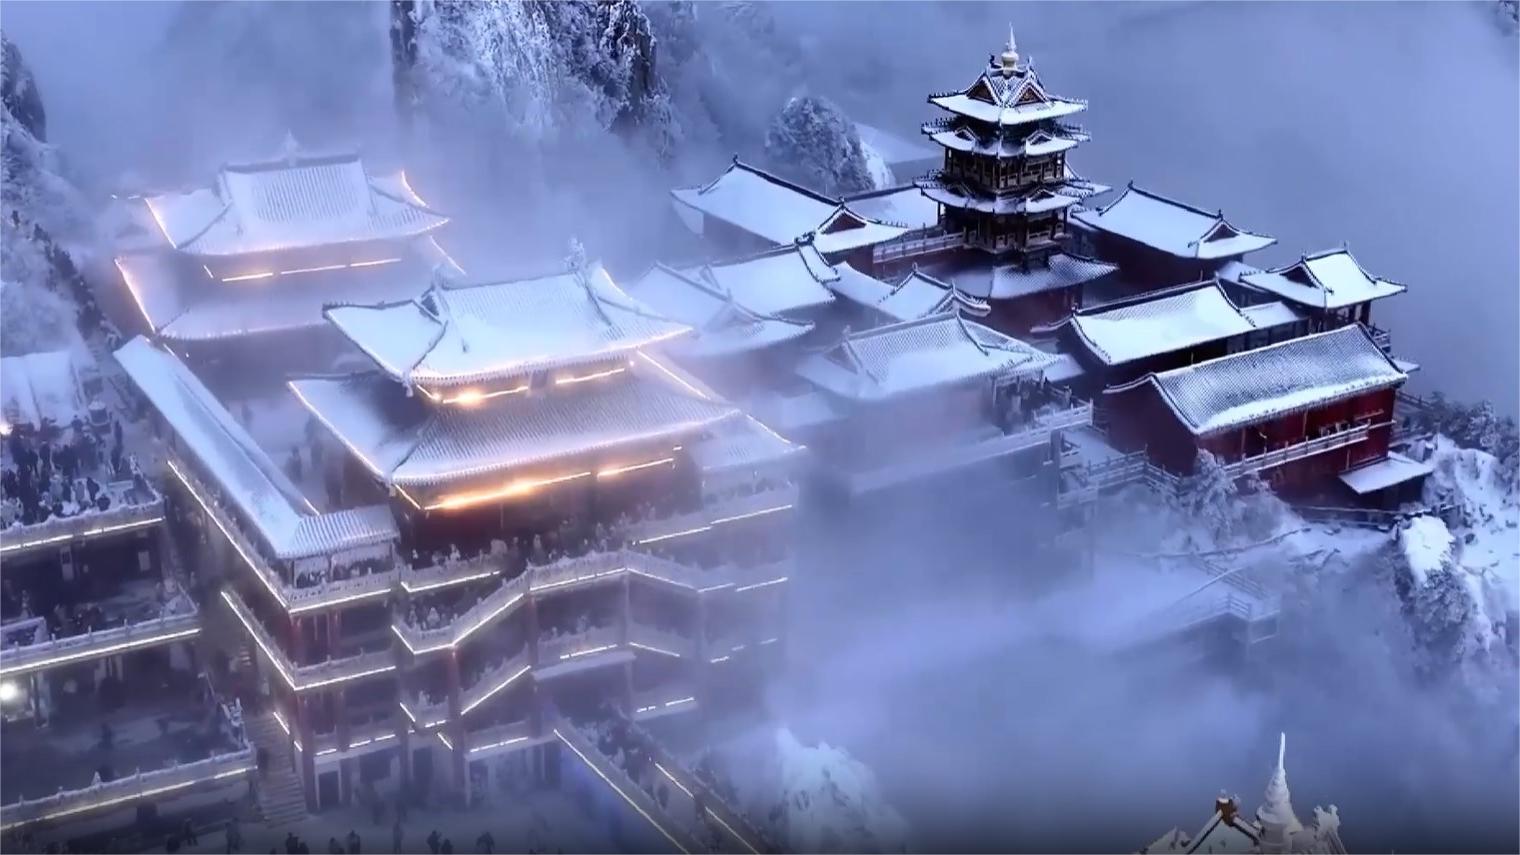 Stunning snowy scenes from Mount Laojun, Henan Province